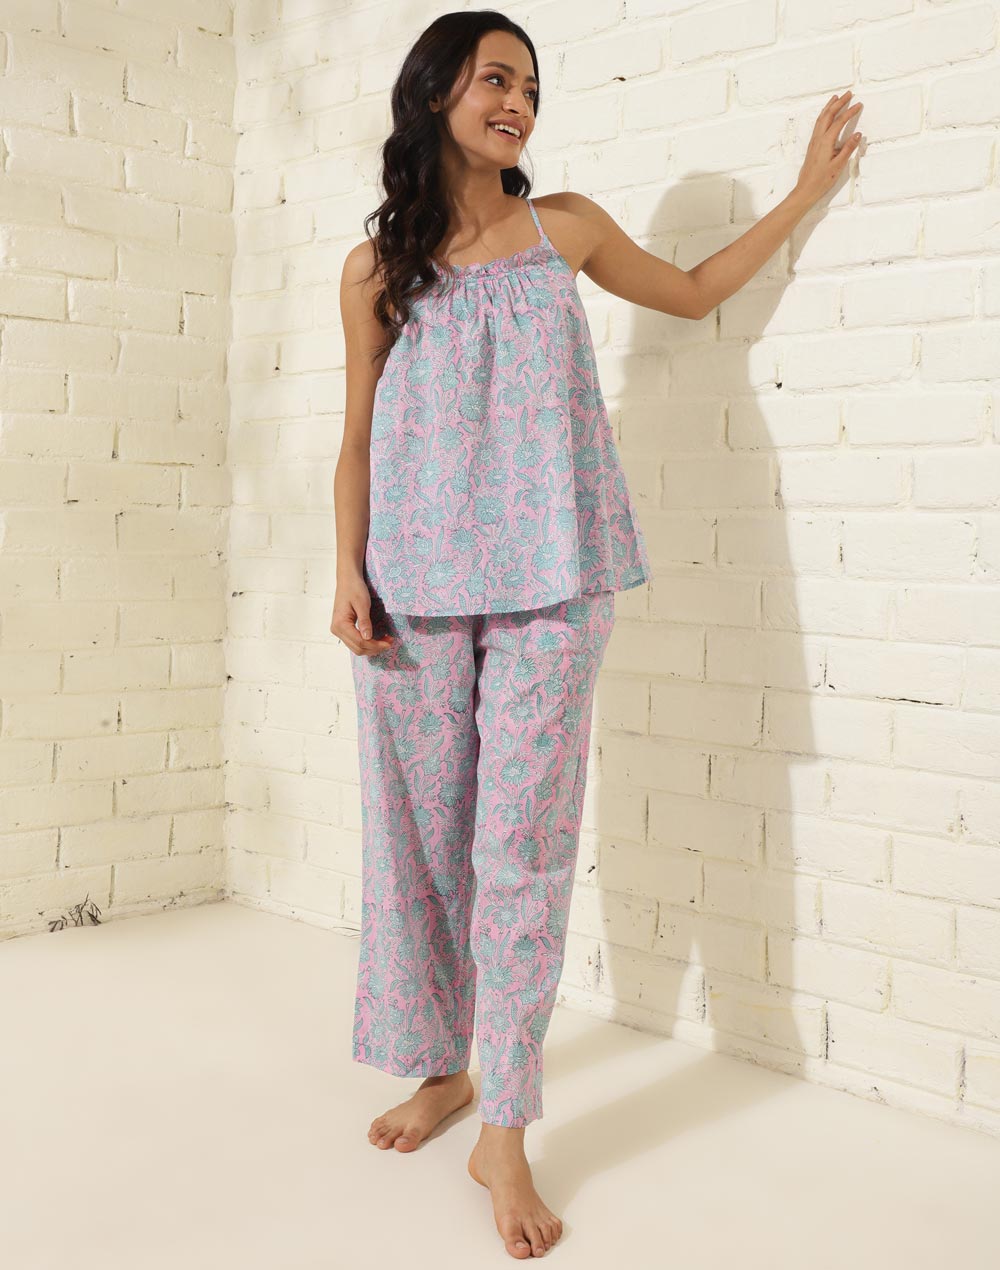 Women's Sleepwear: Pajamas for Women